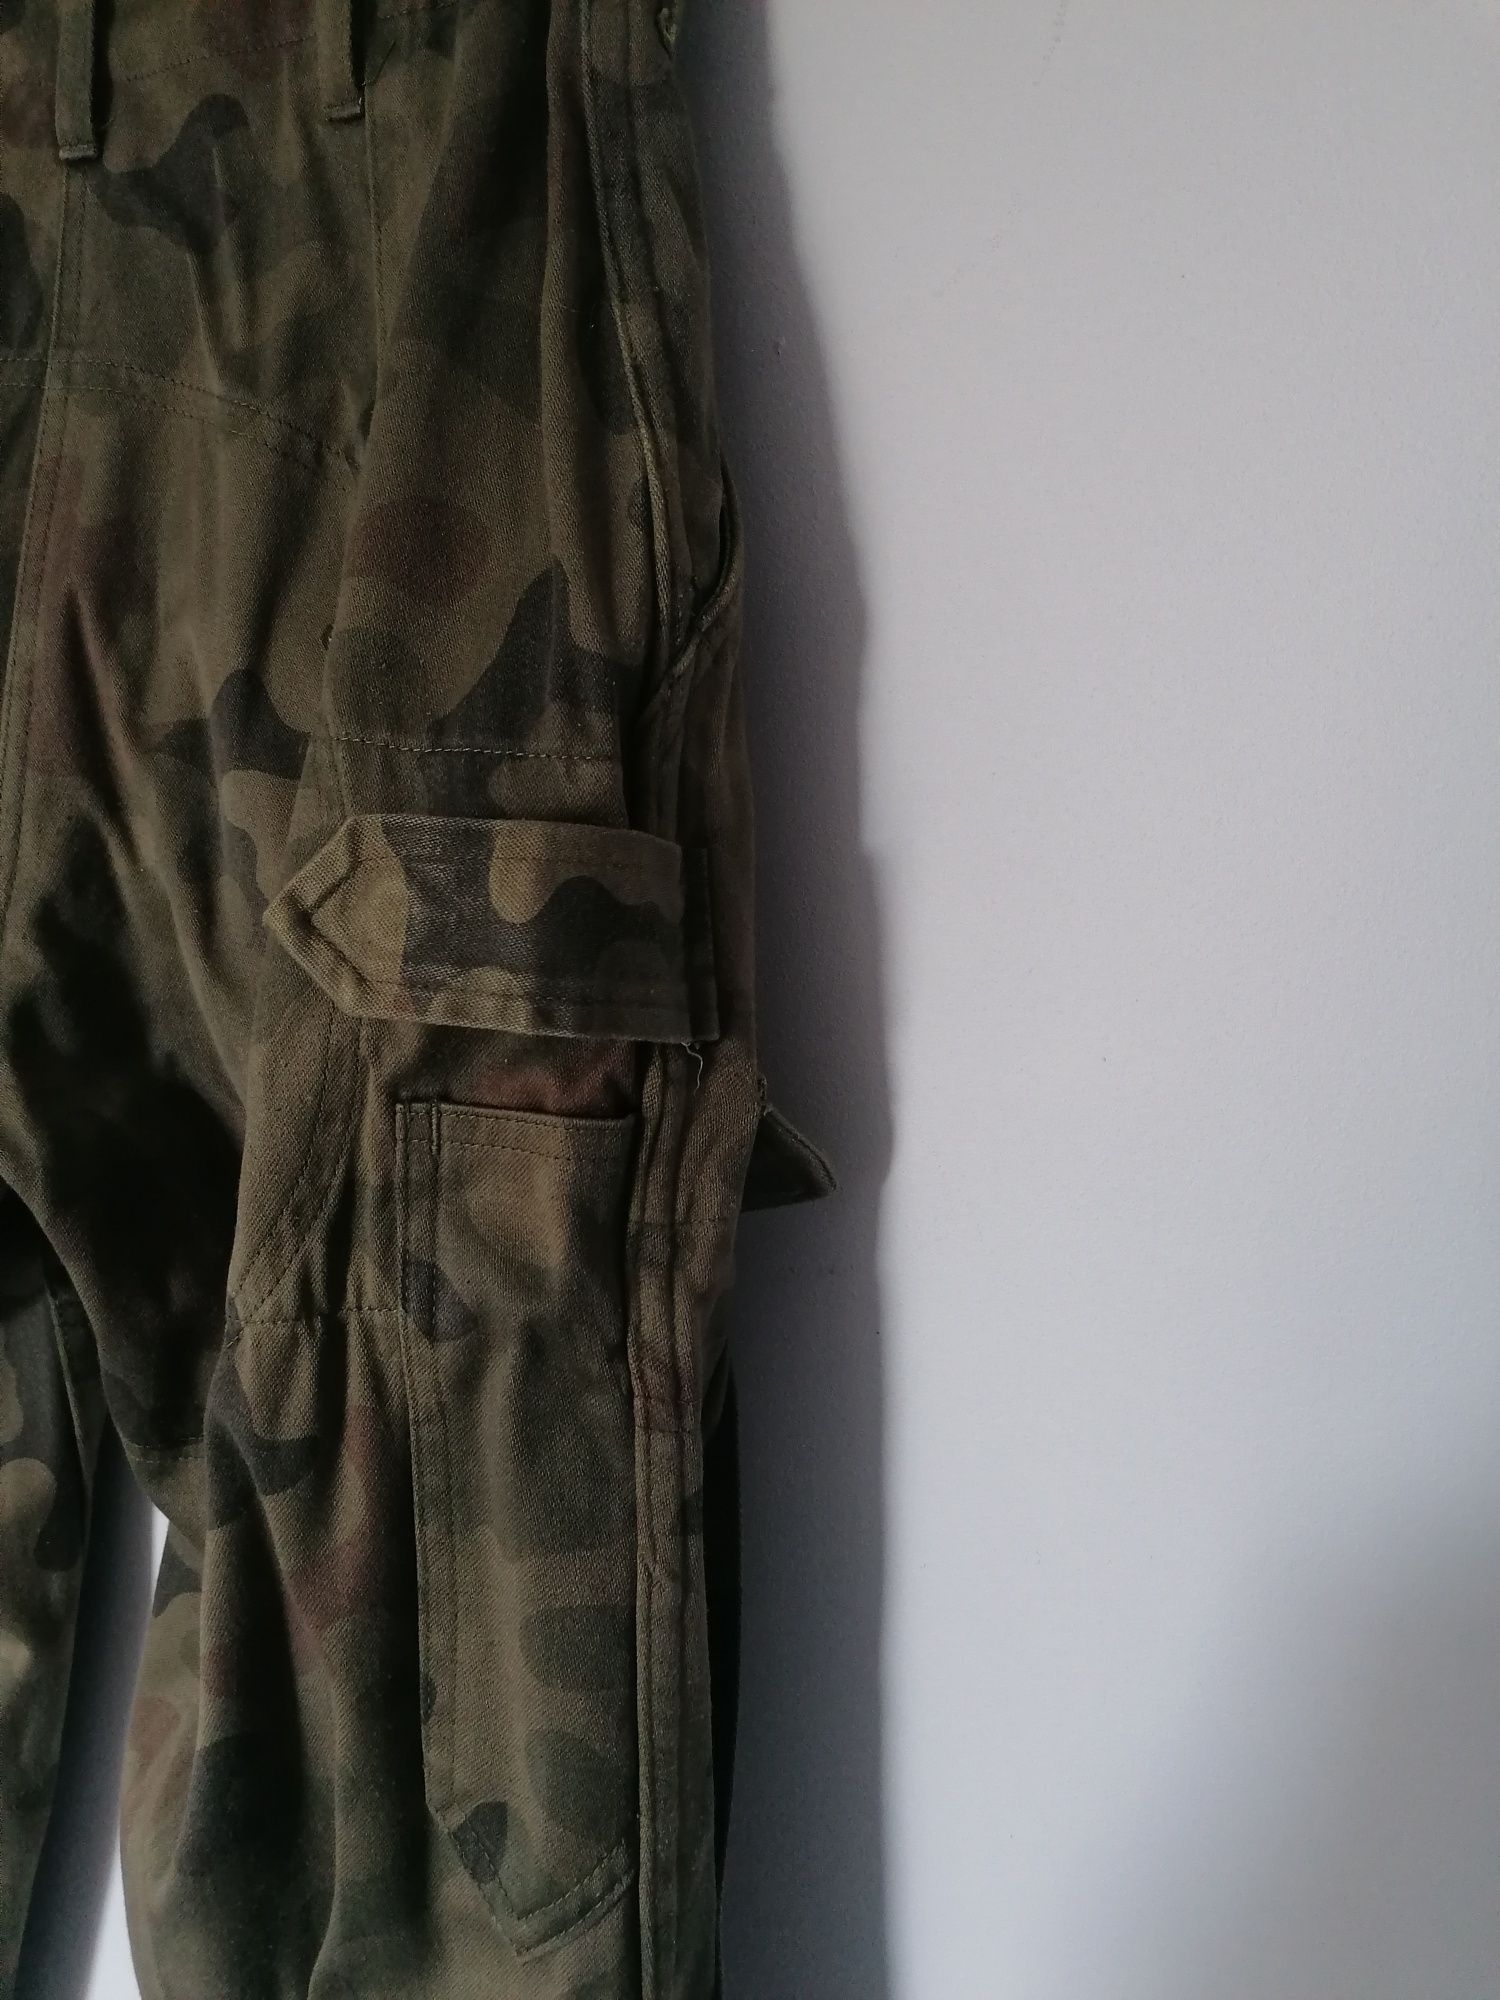 Spodnie polowe mundur 127A/MON  wz 93